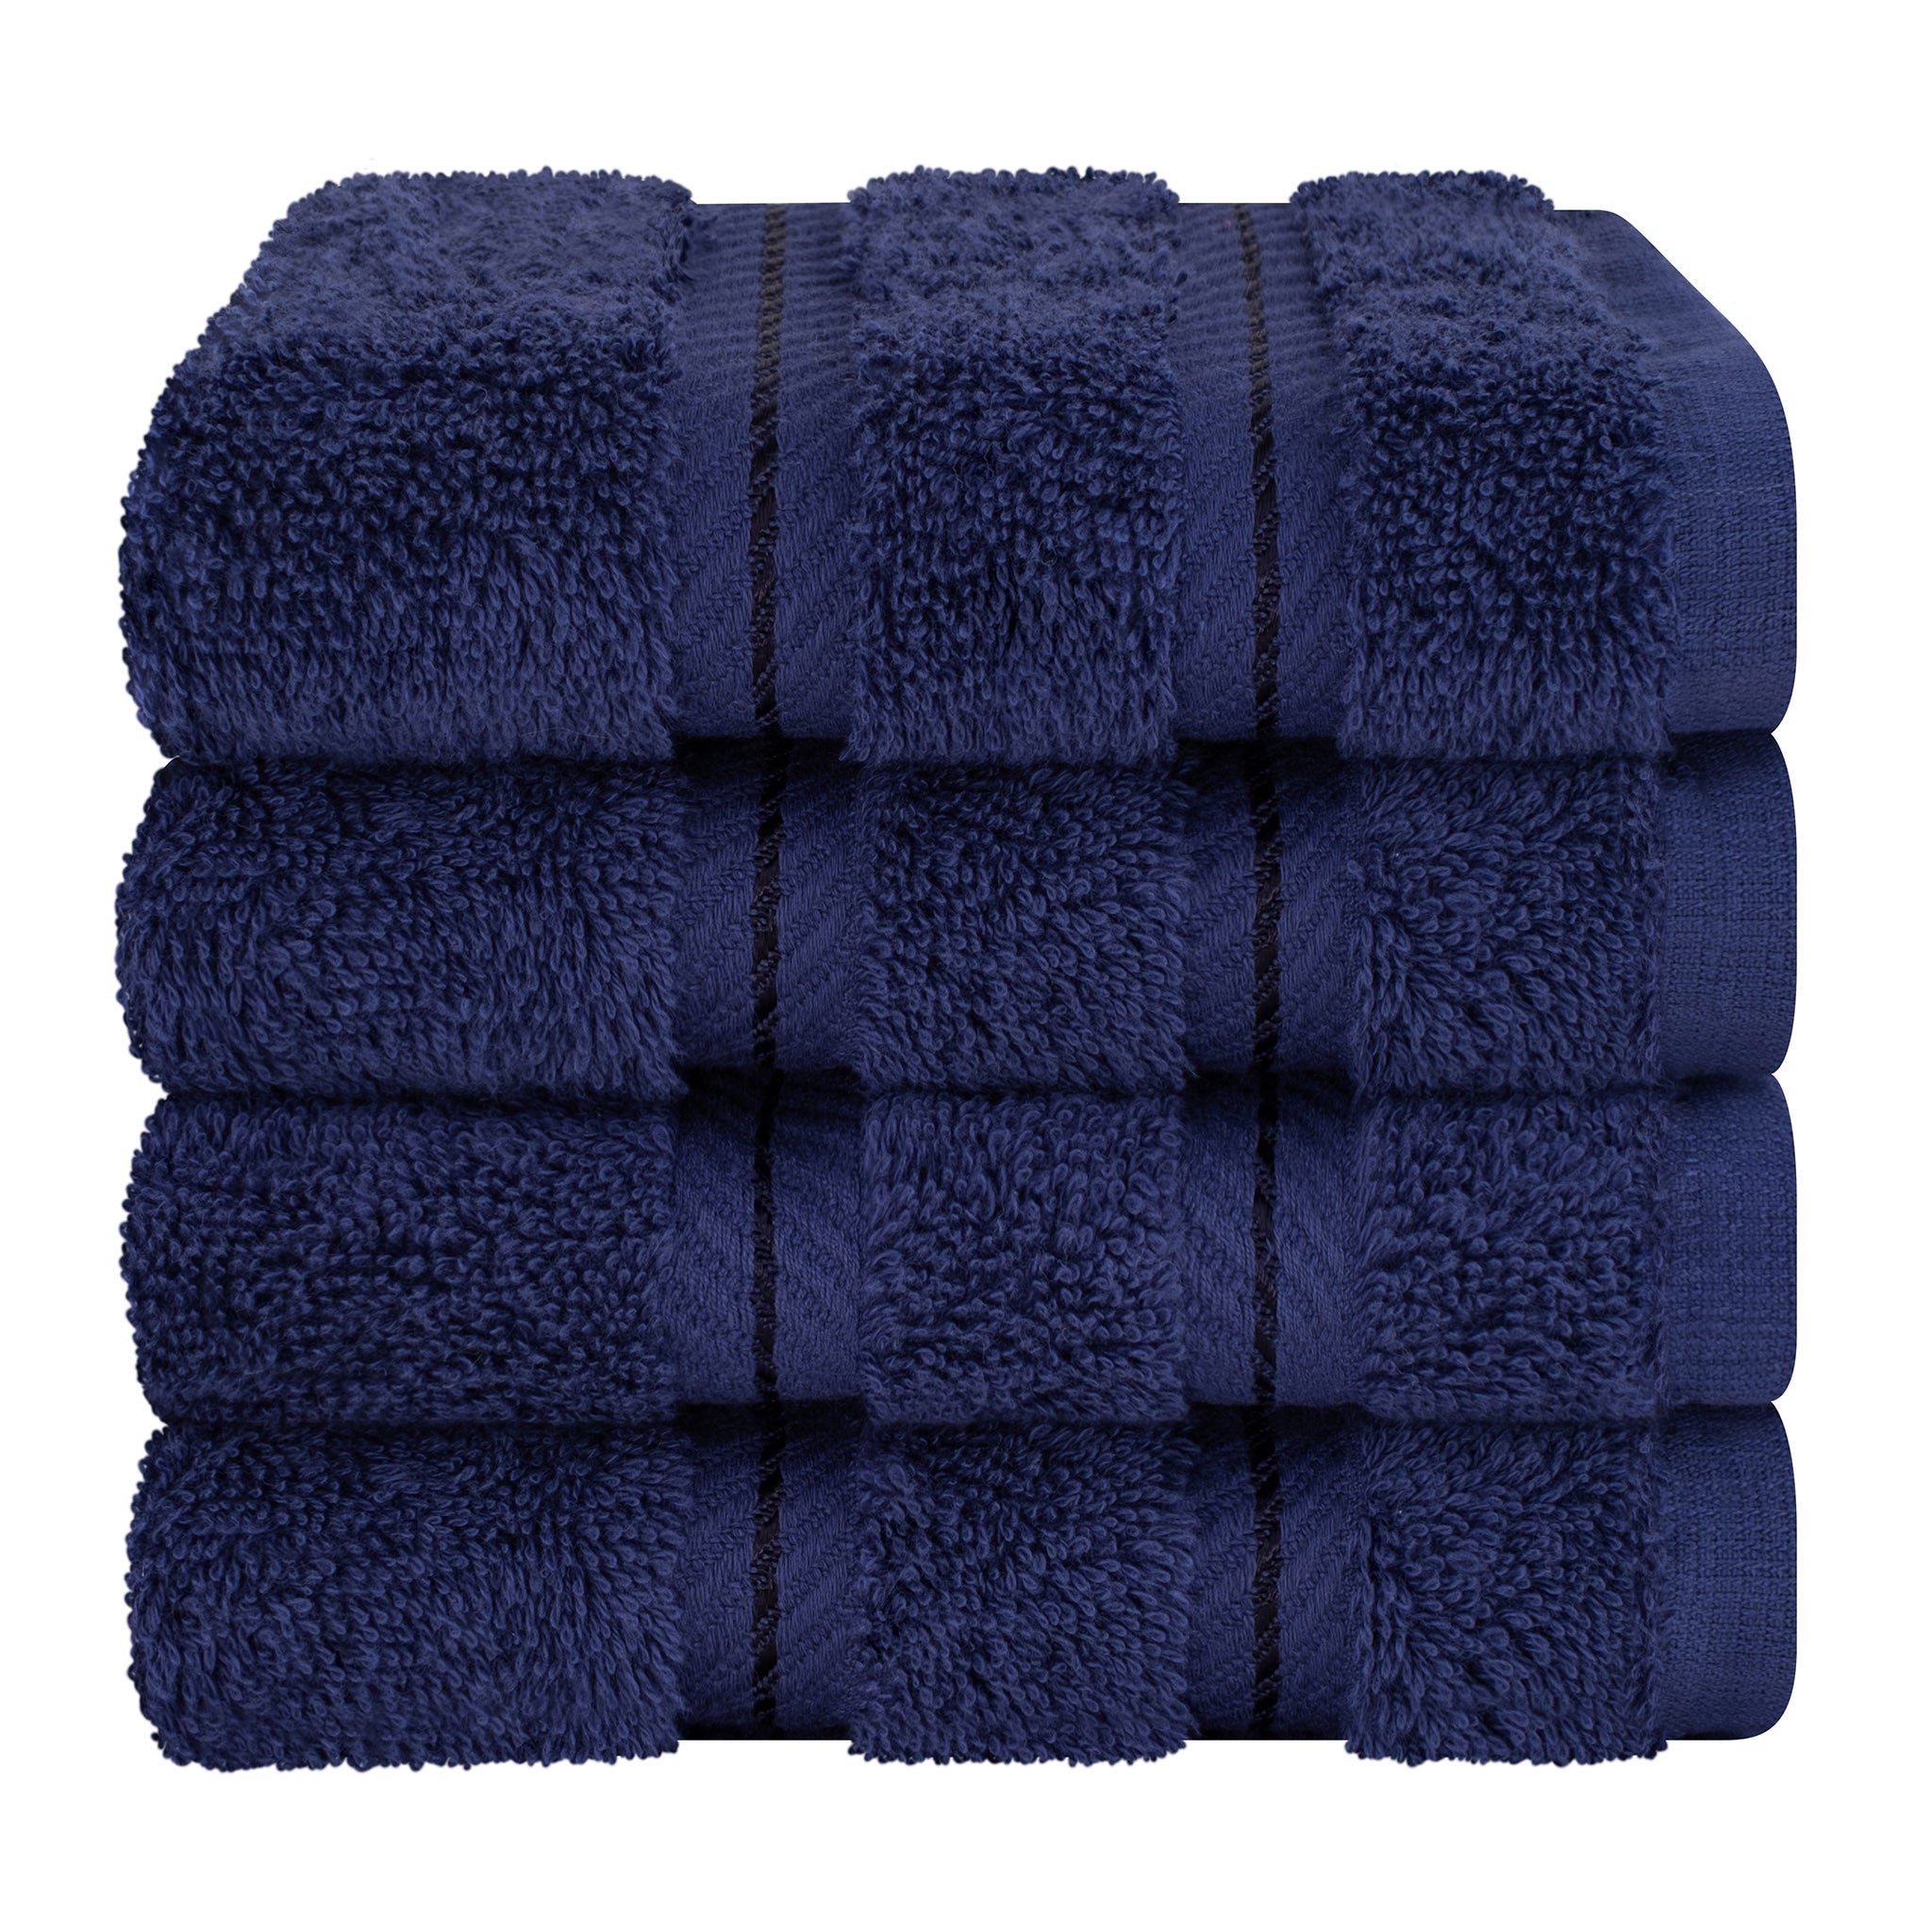 American Soft Linen 100% Turkish Cotton 4 Piece Washcloth Set navy-blue-7